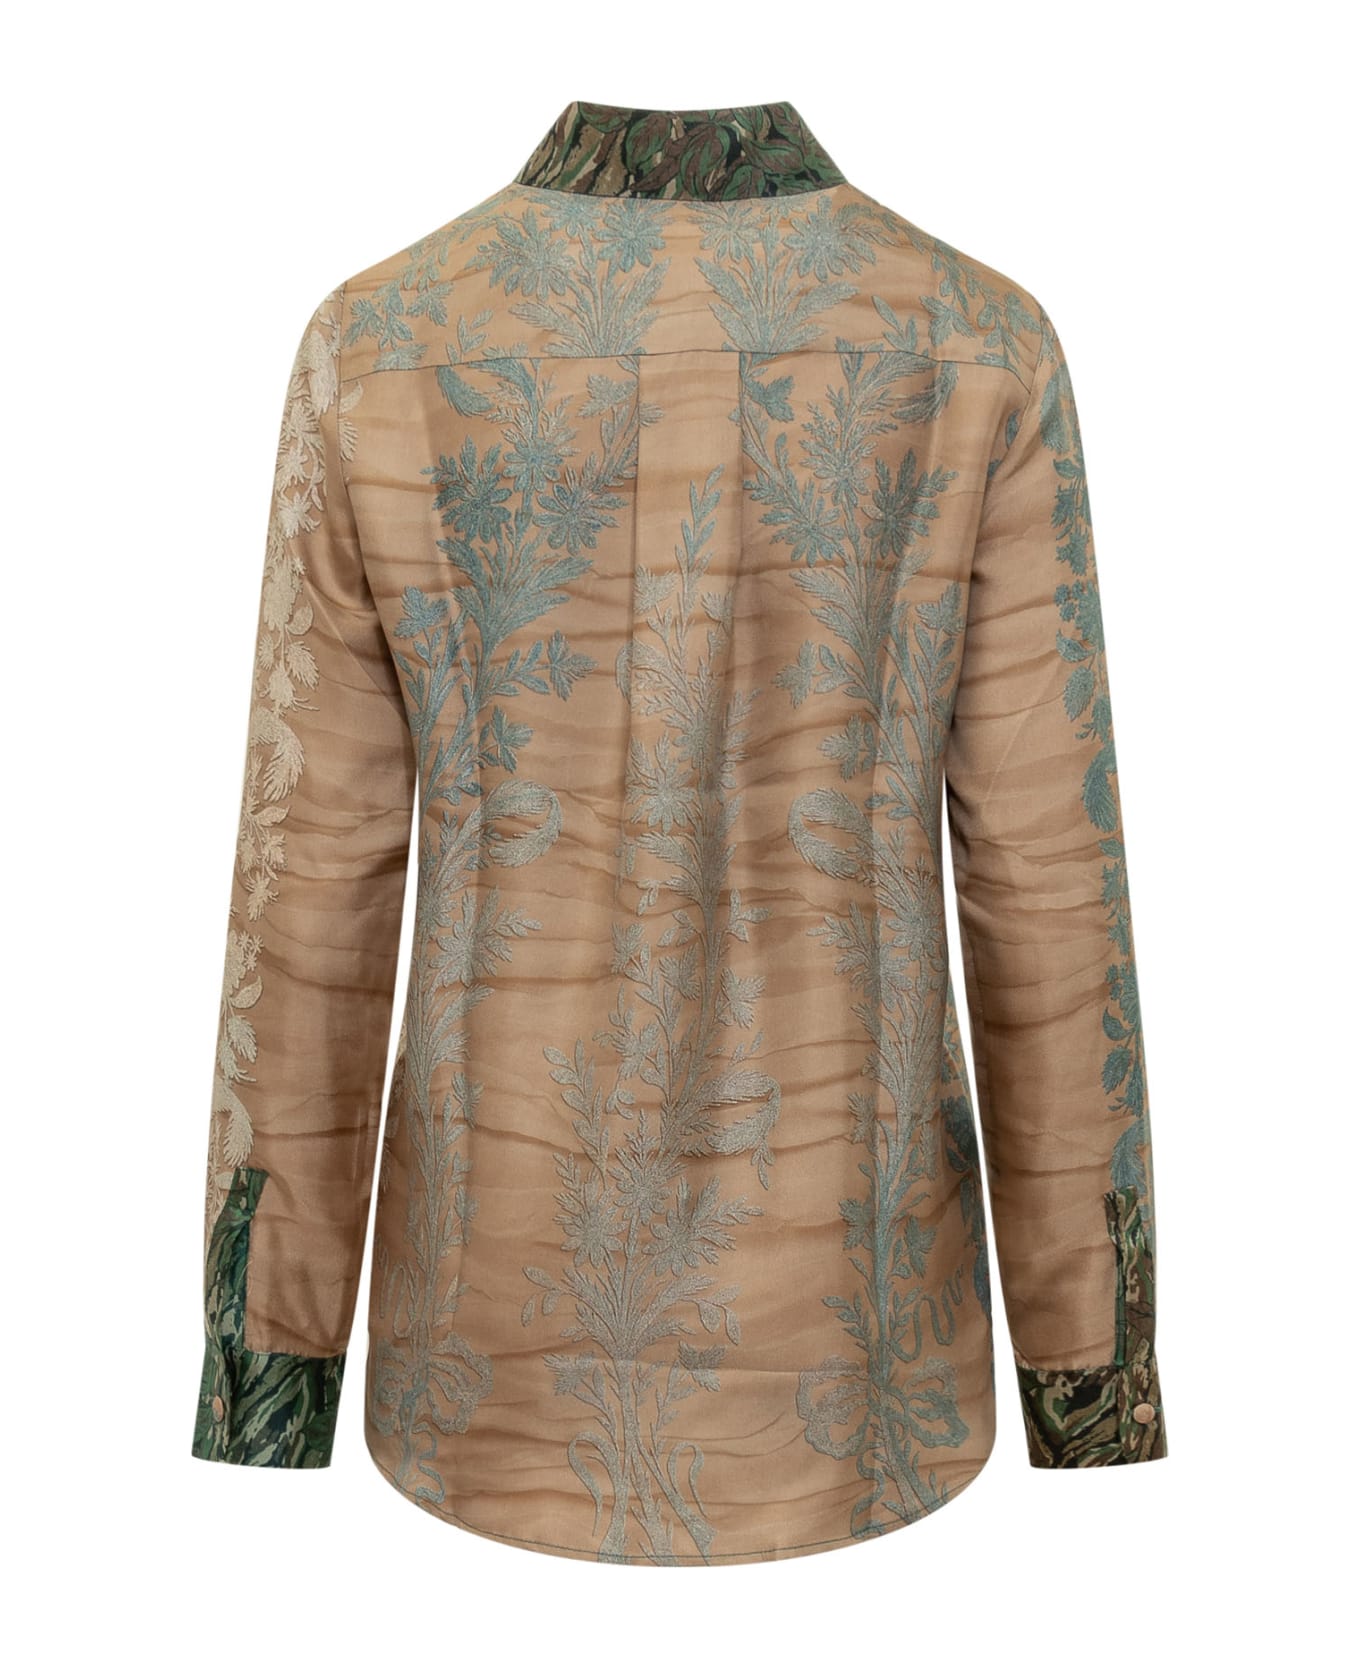 Pierre-Louis Mascia Silk Shirt With Floral Print - CIPRIA AZZURRO